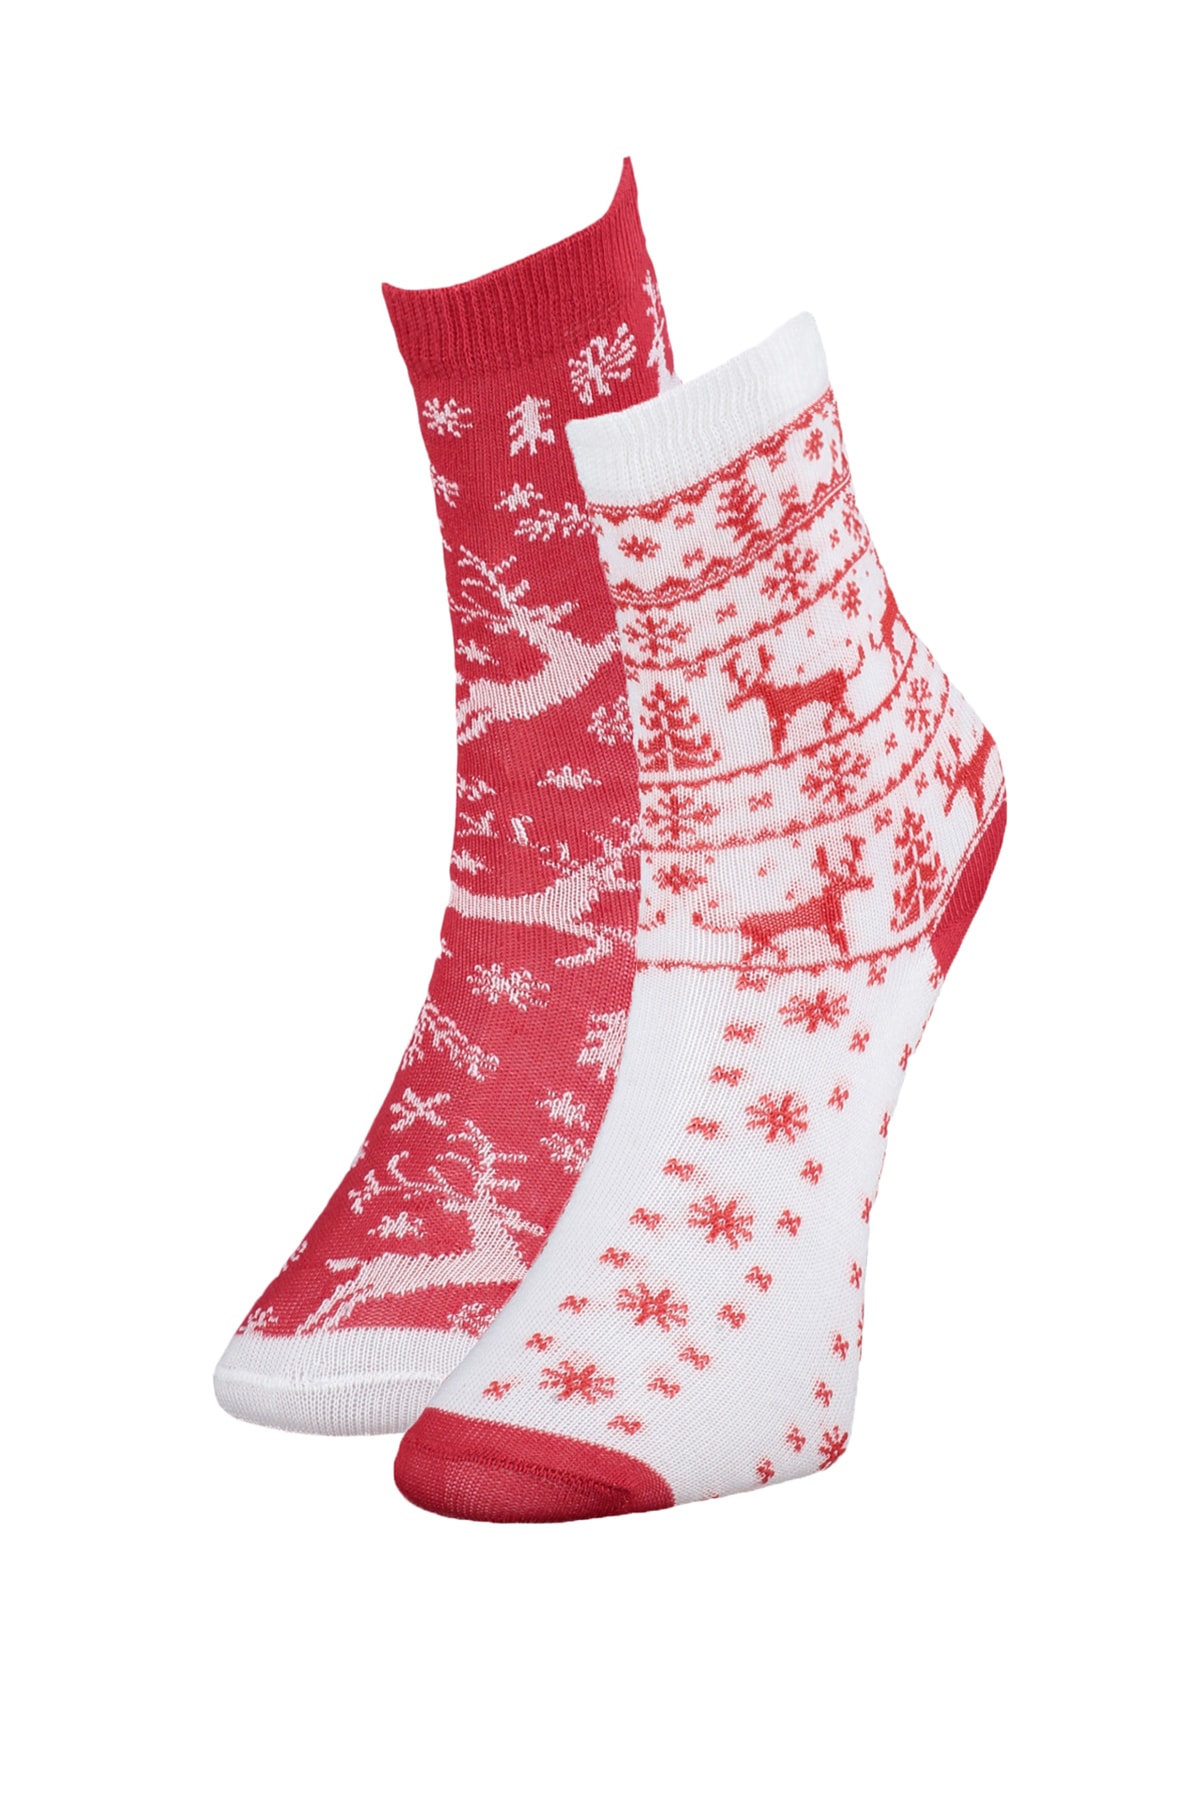 Trendyol Multicolored Christmas Theme 2-Pack Girls Kids Knitted Socks